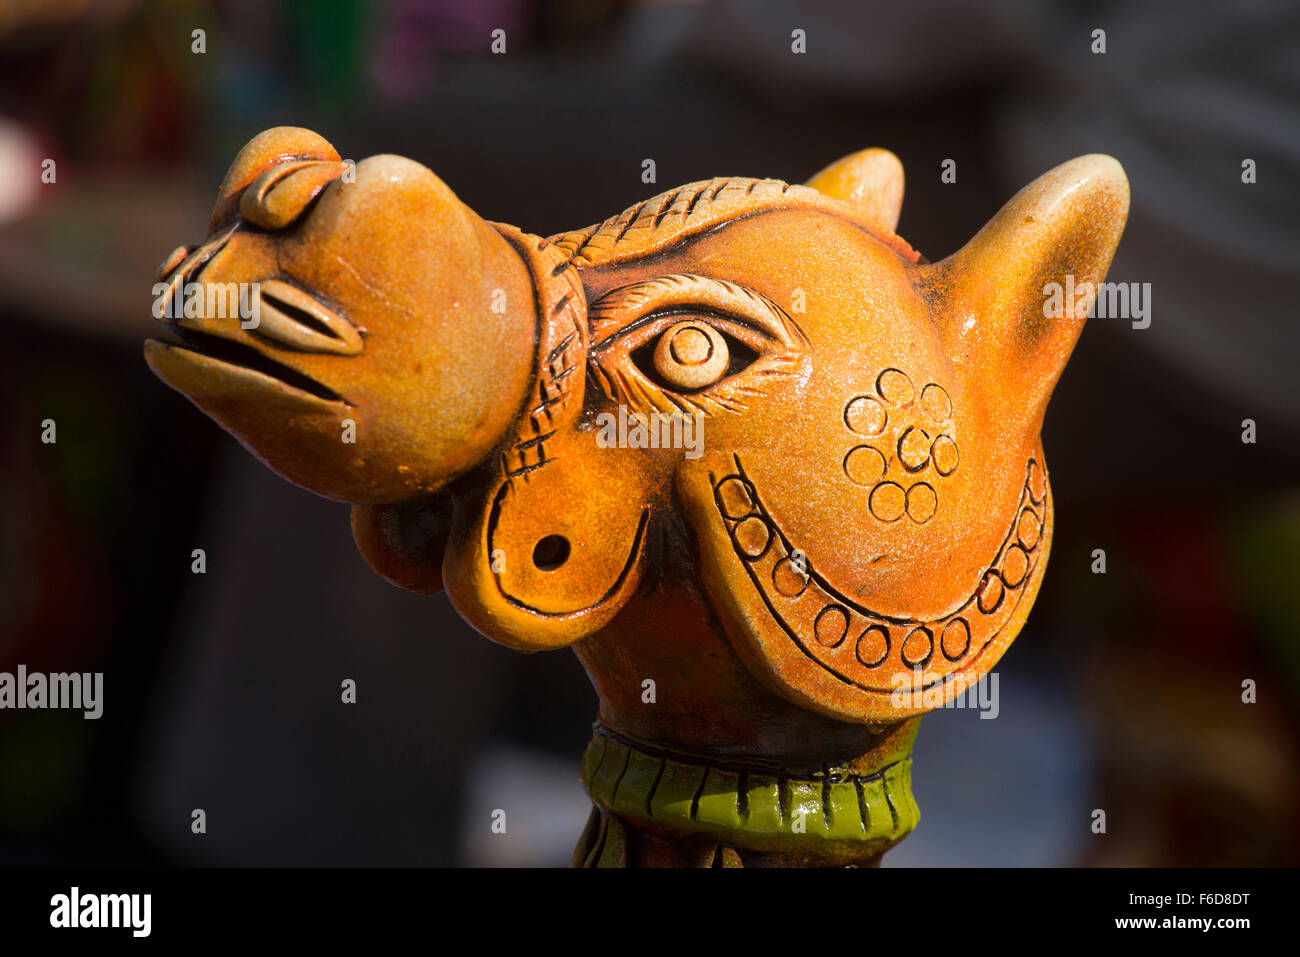 Head of camel kept for sale, surajkund mela, faridabad, haryana, india, asia Stock Photo